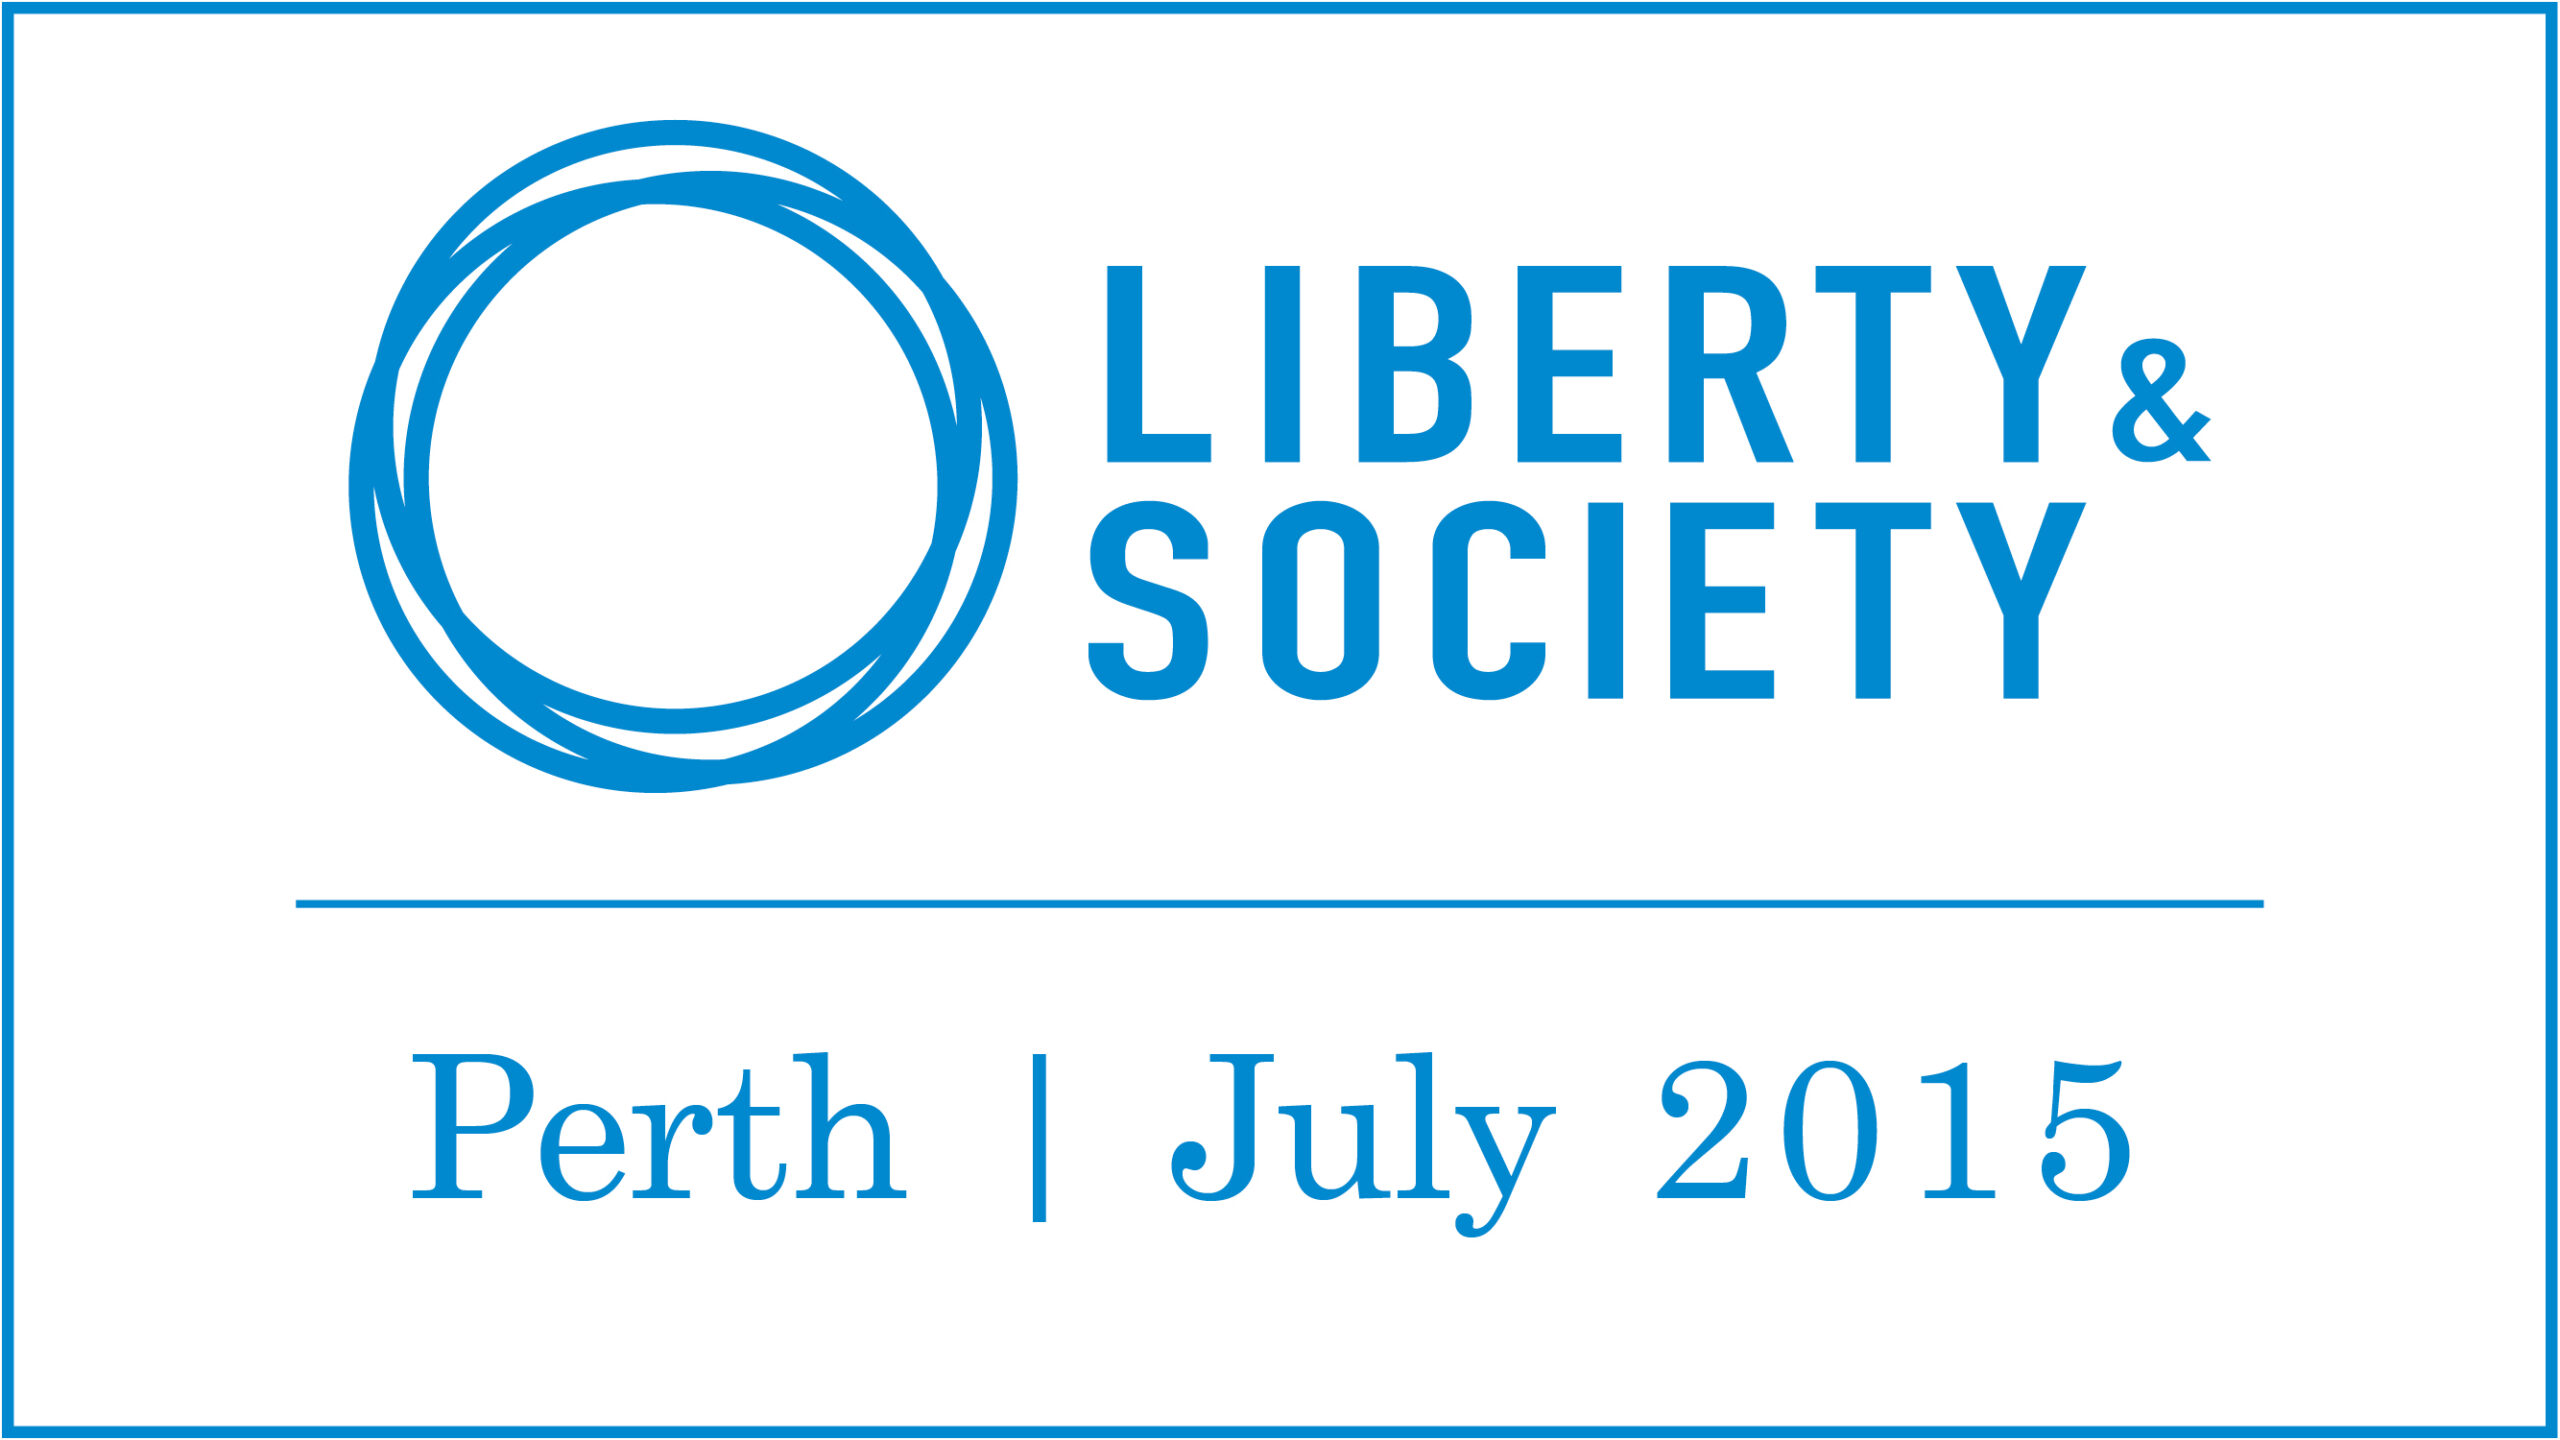 Liberty & Society 2015 | Perth